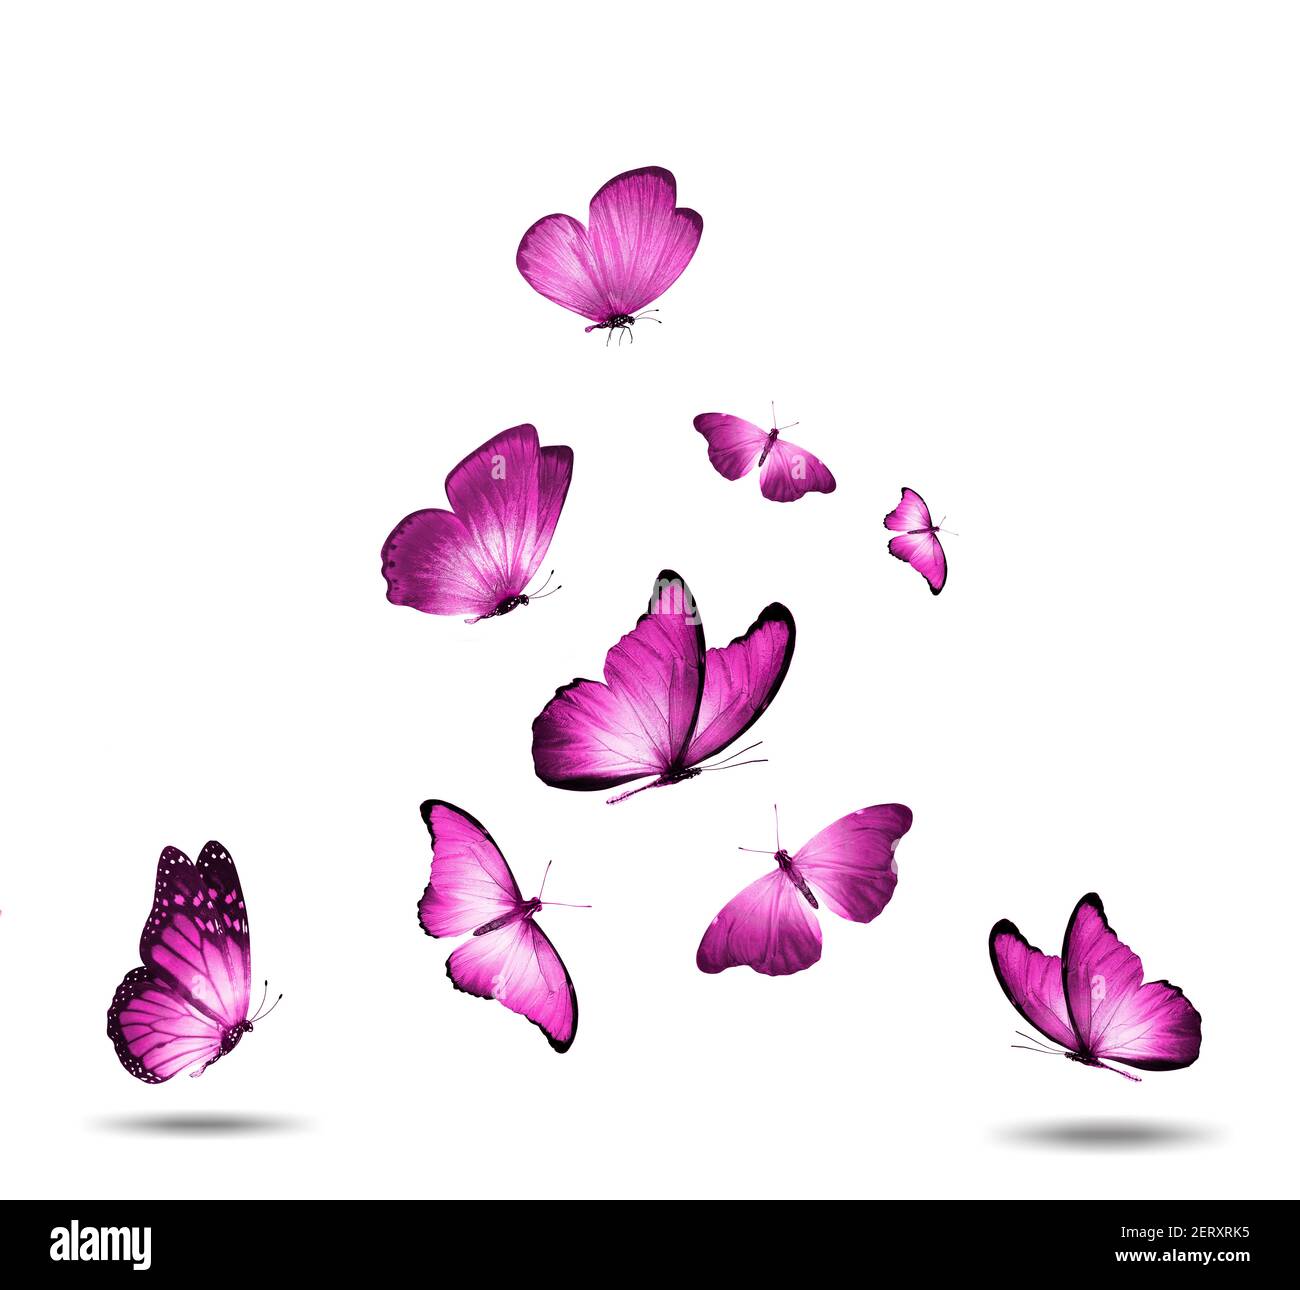 troupeau de papillons roses isolés sur fond blanc Banque D'Images